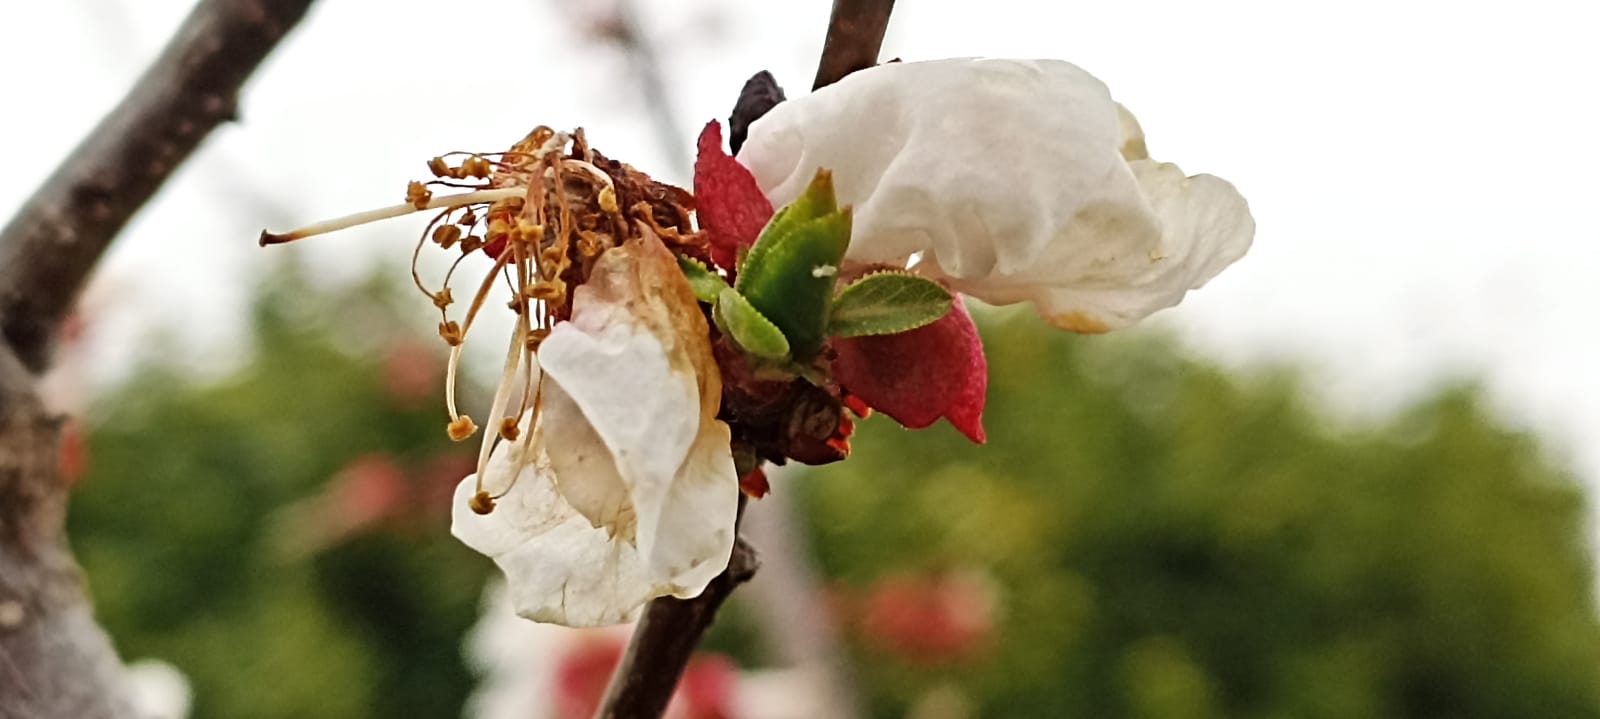 Fiore di albicocco con evidenti sintomi di monilia